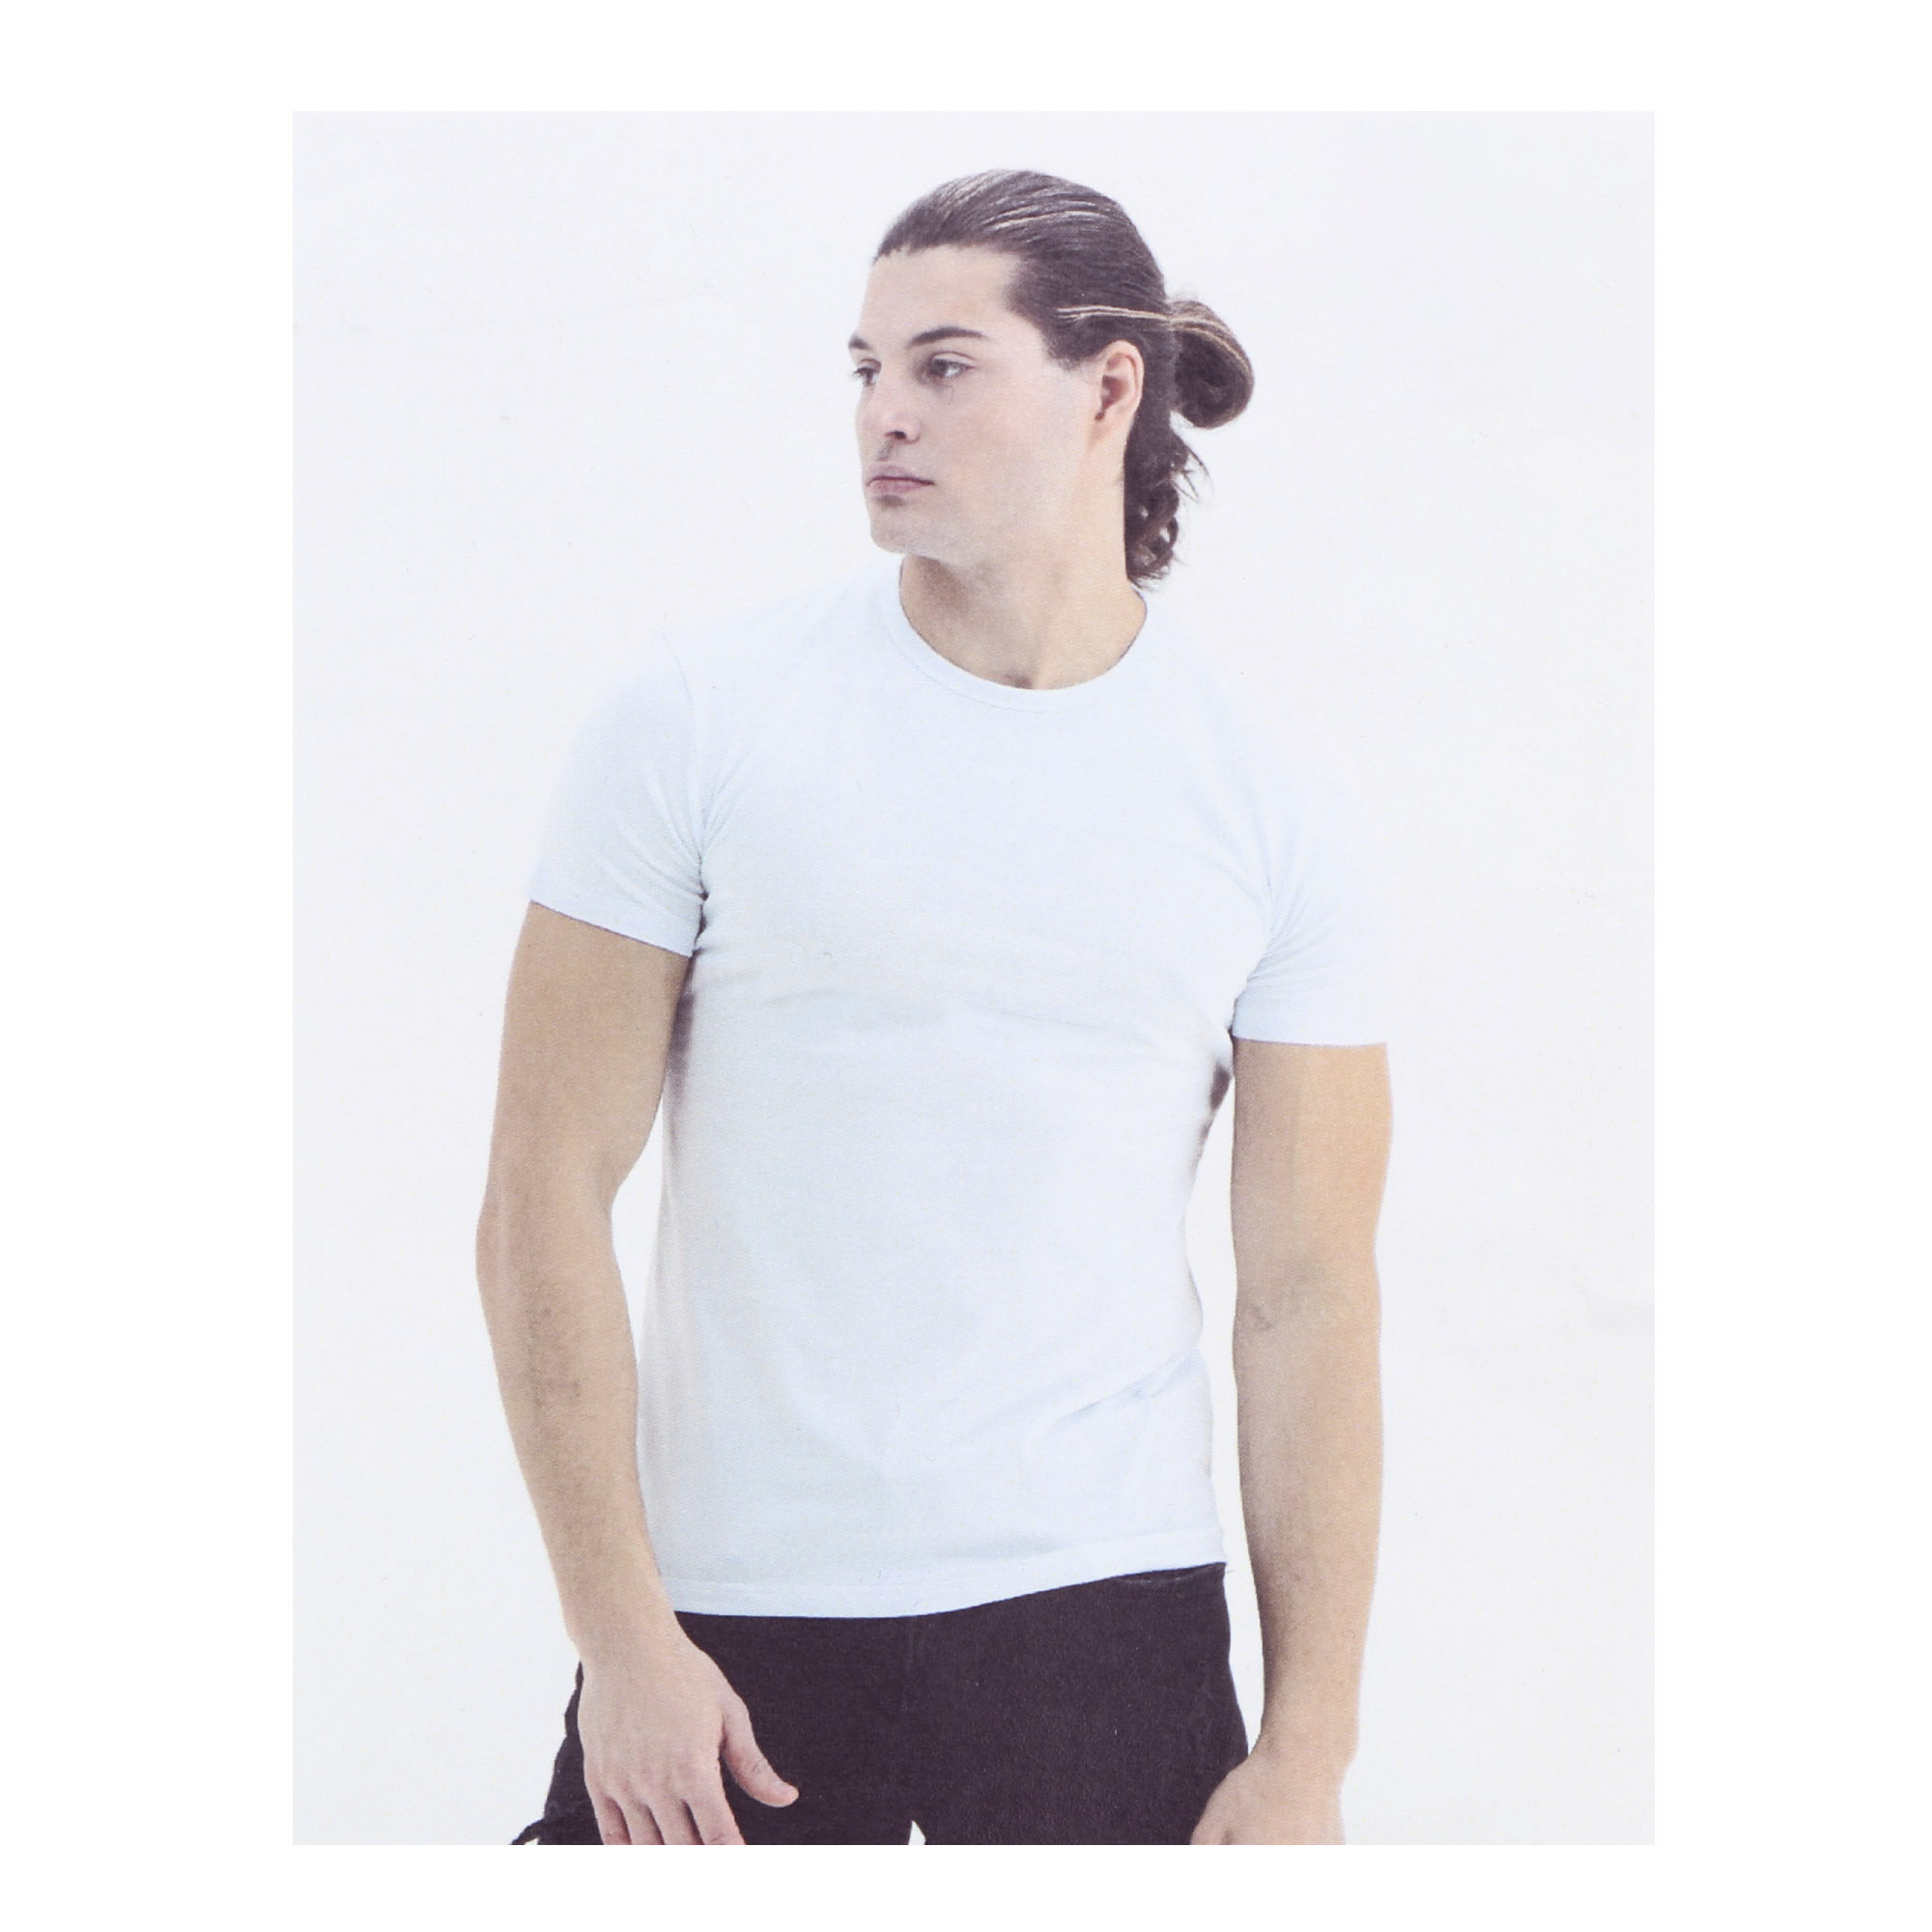 Мужская футболка Pantelemone MF-914 46 белая, цвет белый, размер 46 - фото 4